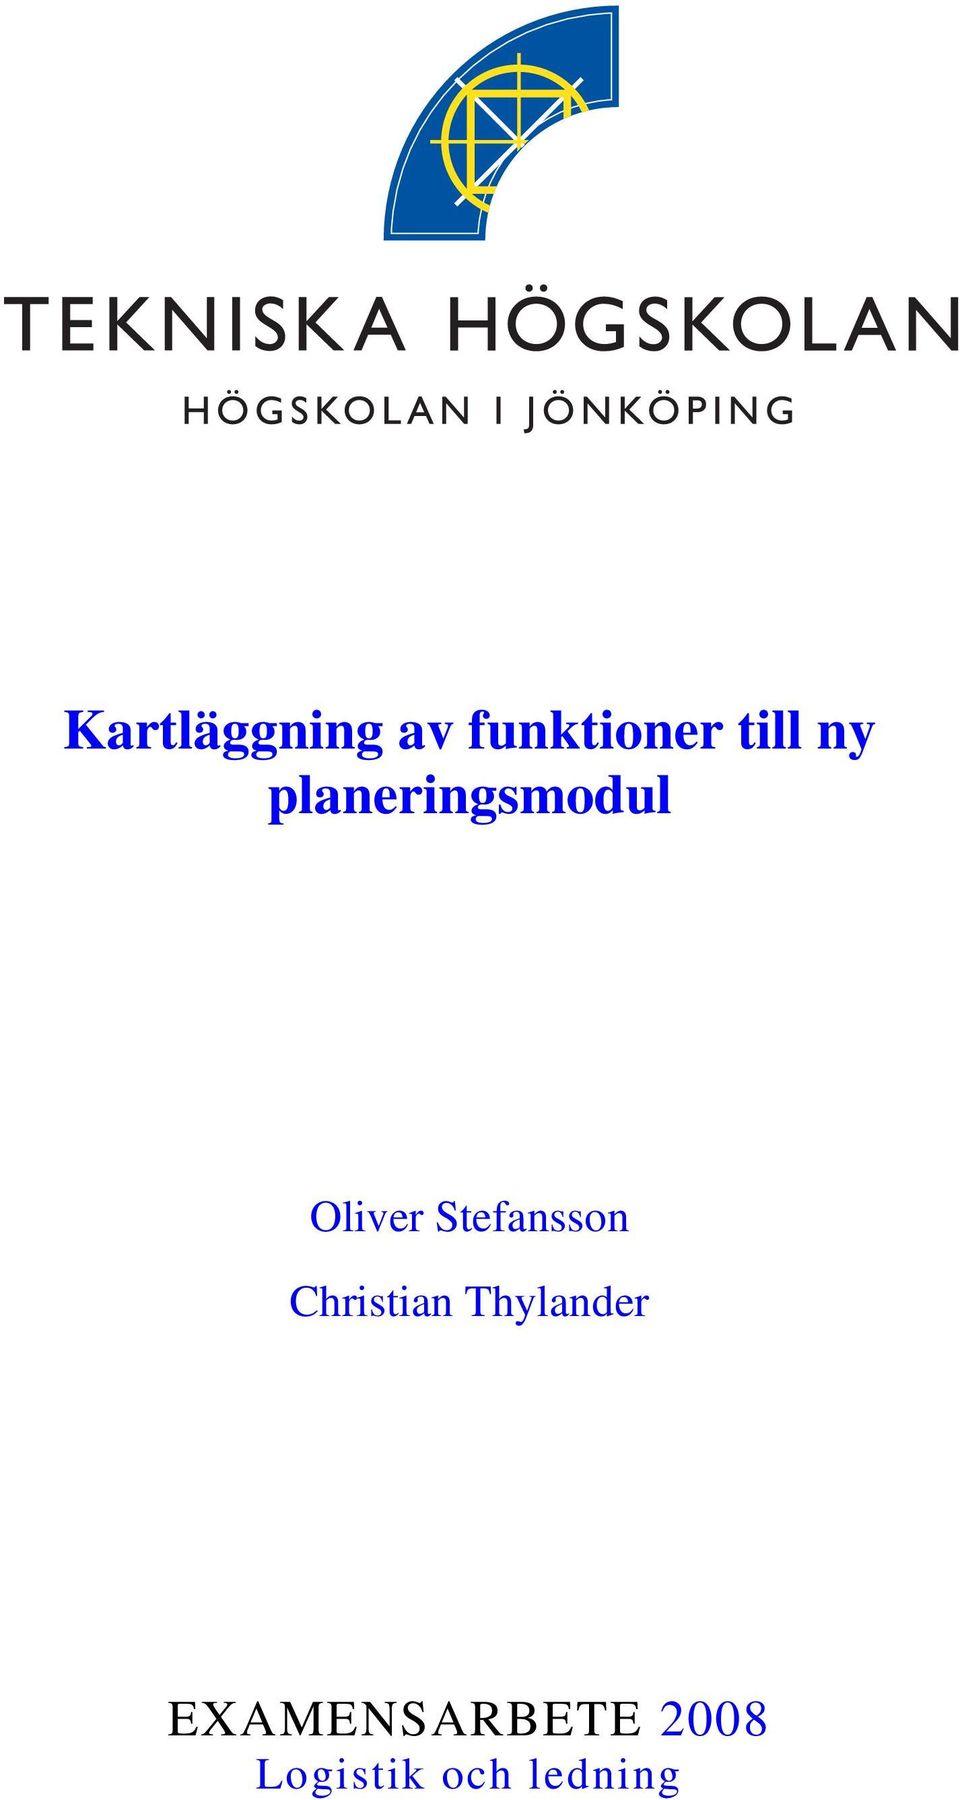 Stefansson Christian Thylander